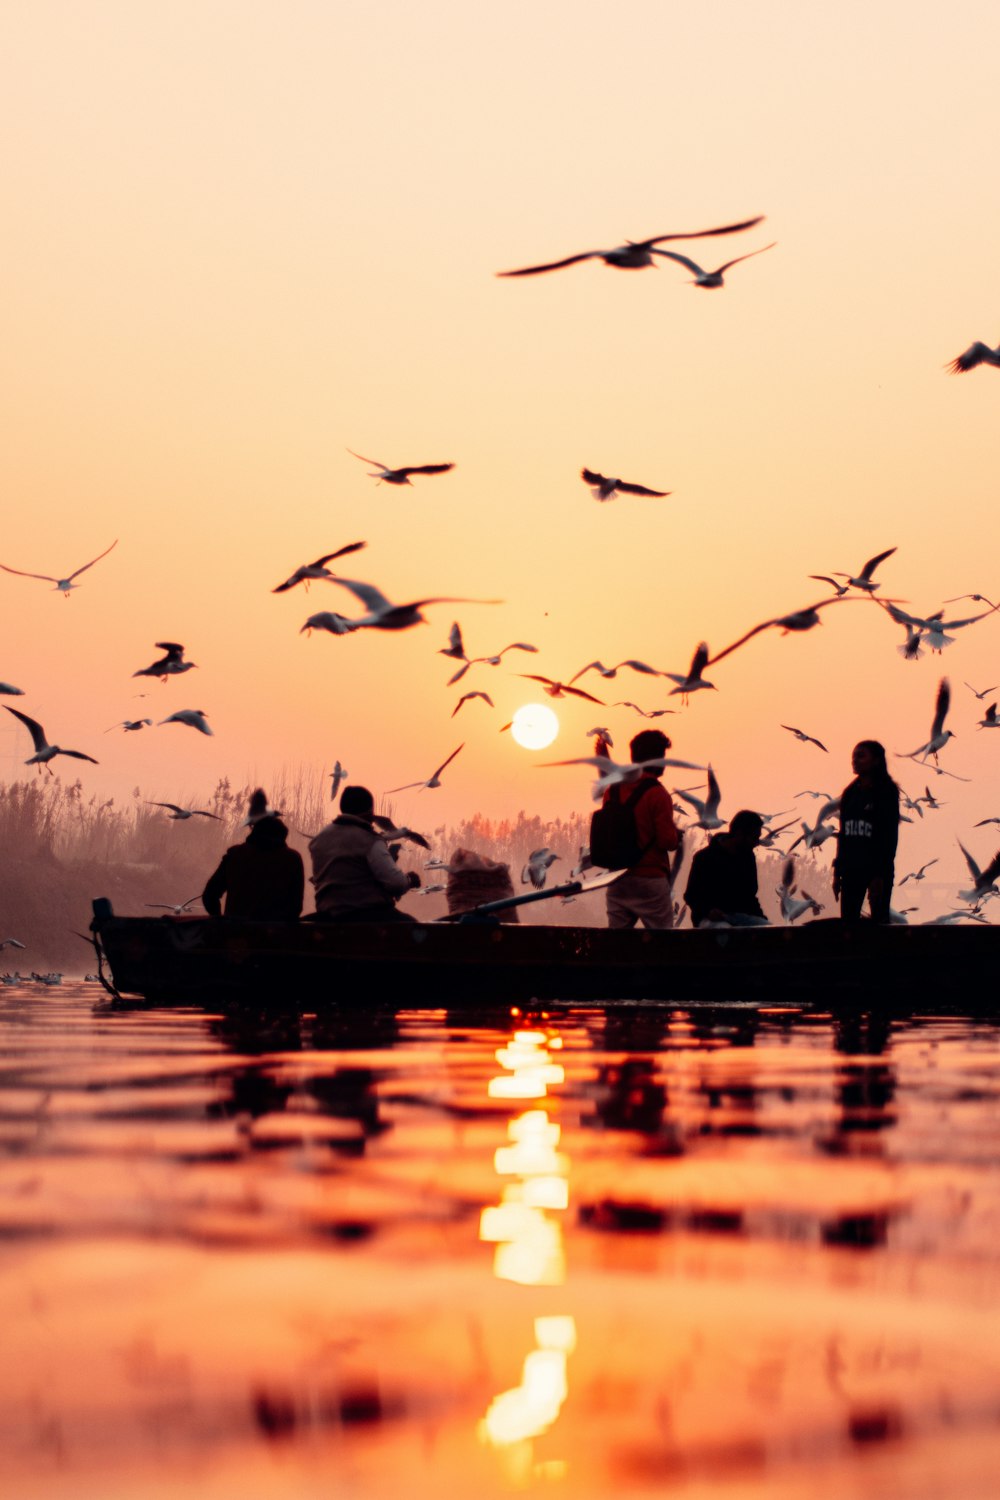 Eine Gruppe von Menschen in einem Boot mit Vögeln, die über sie fliegen